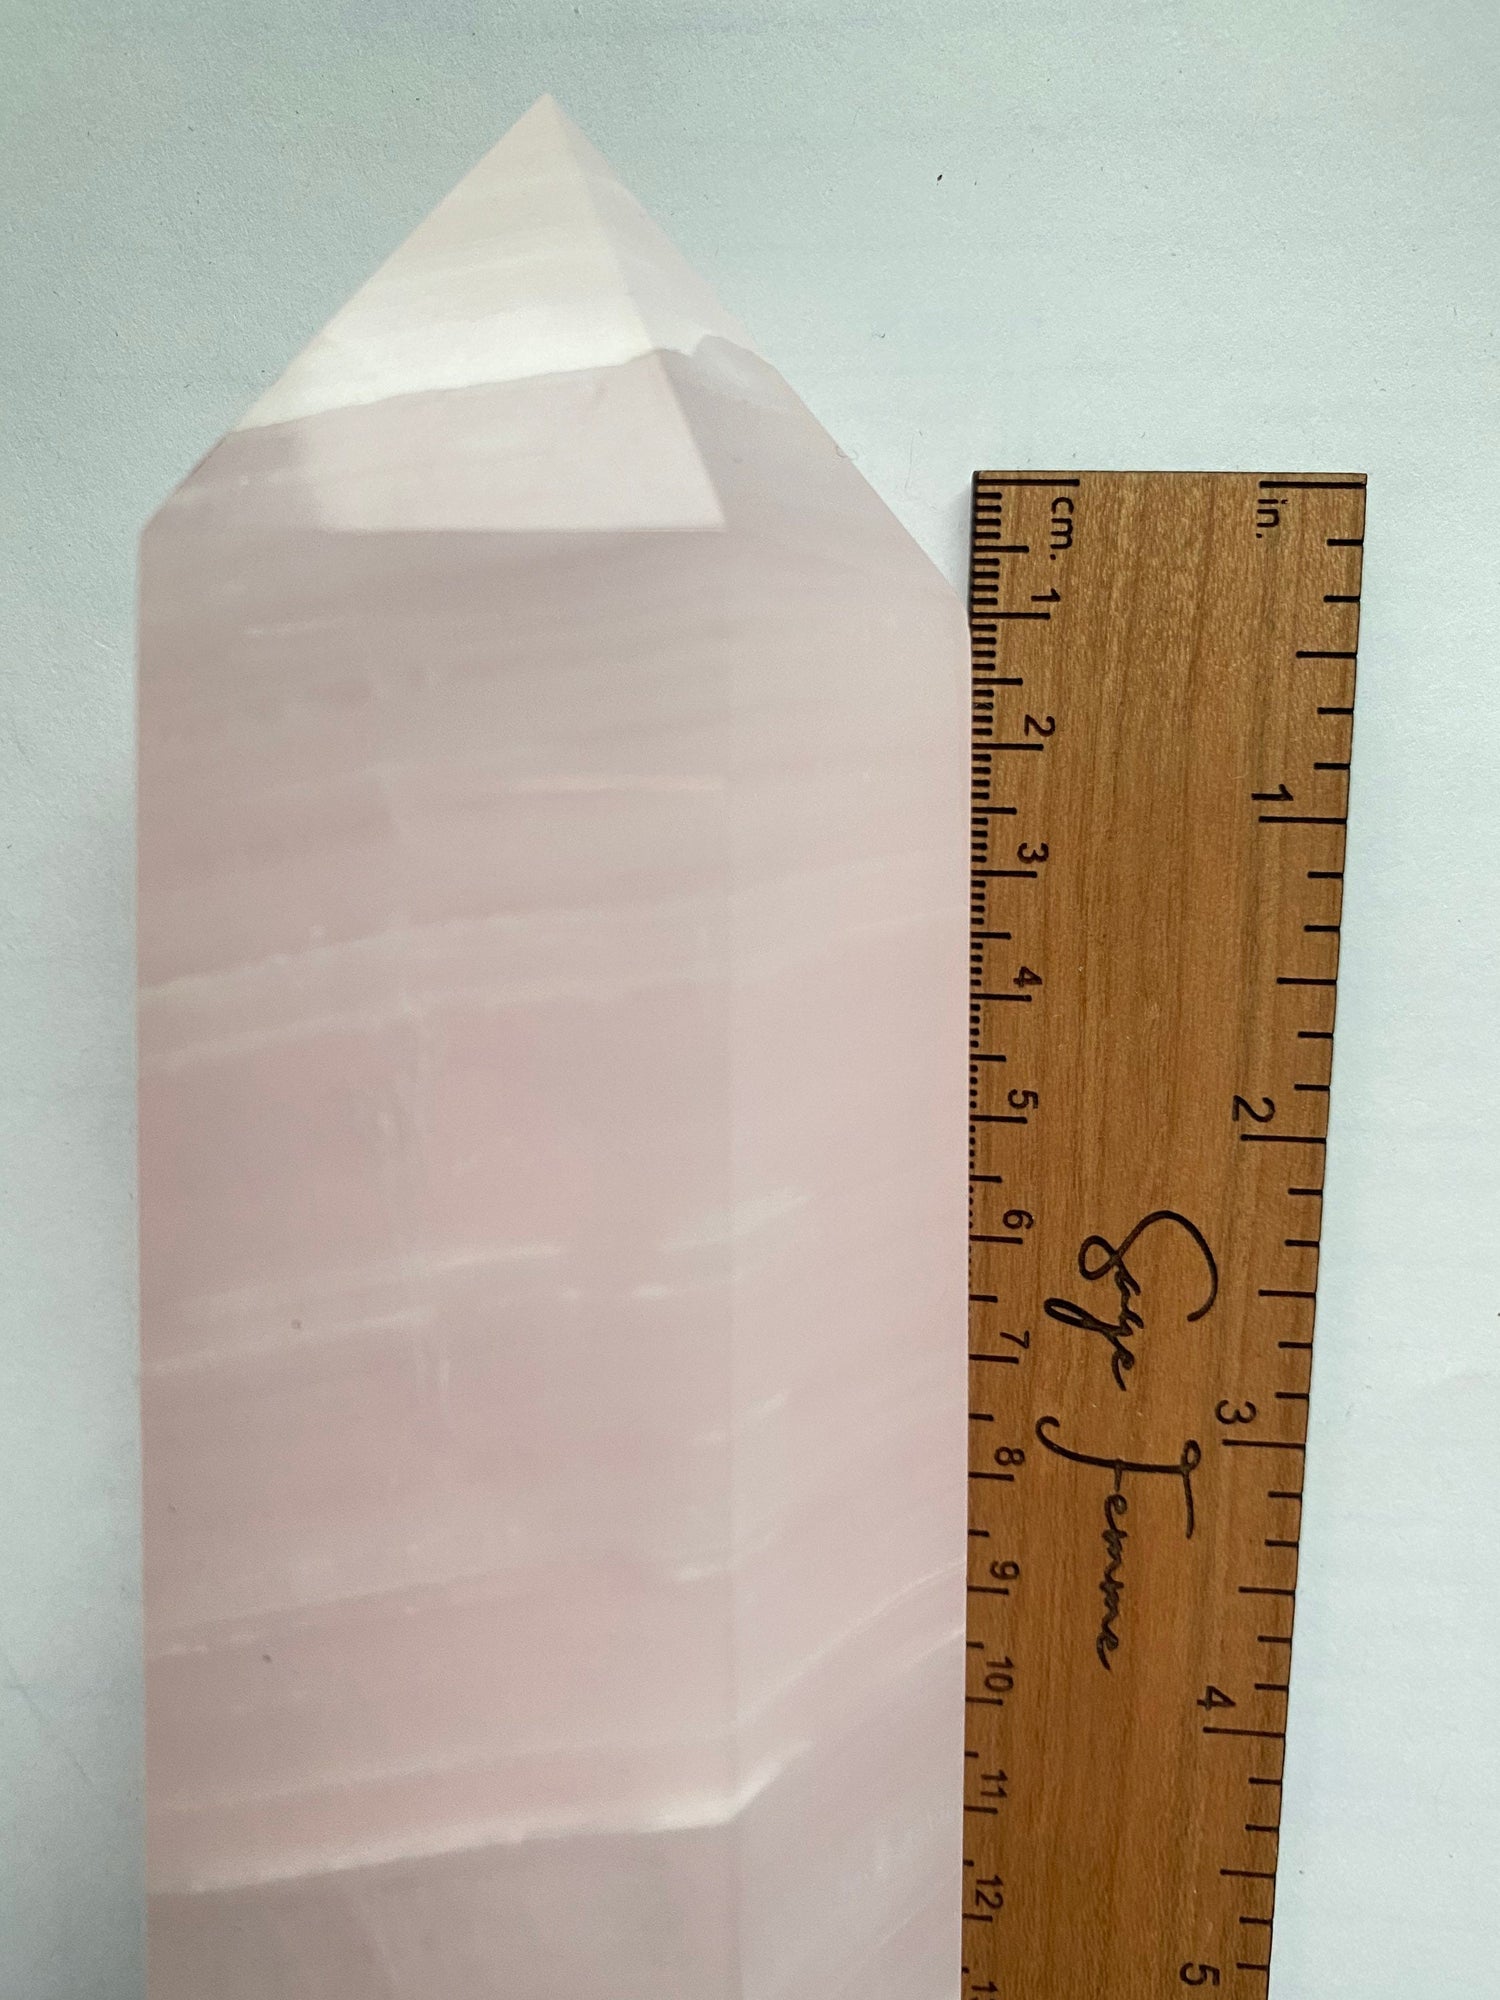 STUNNING Pink Mangano Calcite Tower | UV Reactive Calcite | Blacklight Crystal | Pink Calcite | Manganoan Calcite